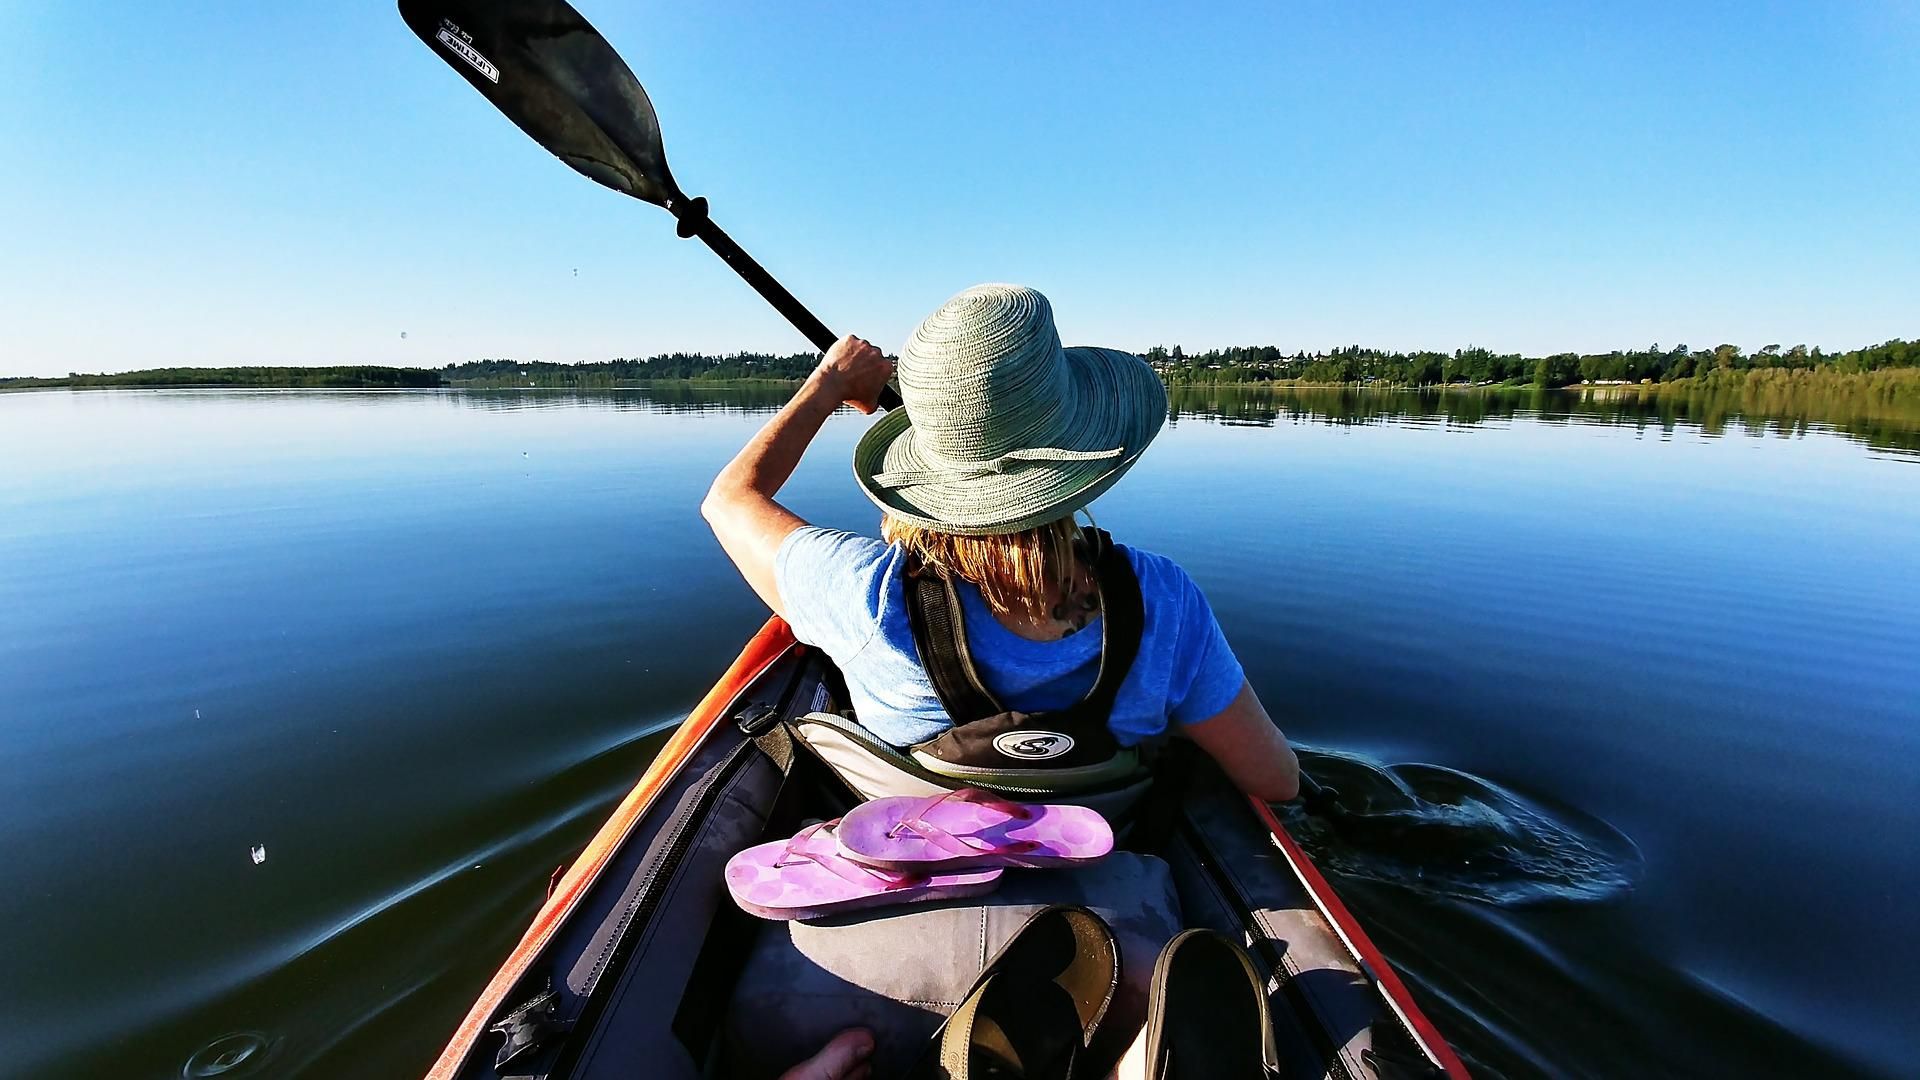 KAYAK LIDL: Lidl desafía a Decathlon con este kayak hinchable perfecto para  tus vacaciones de verano